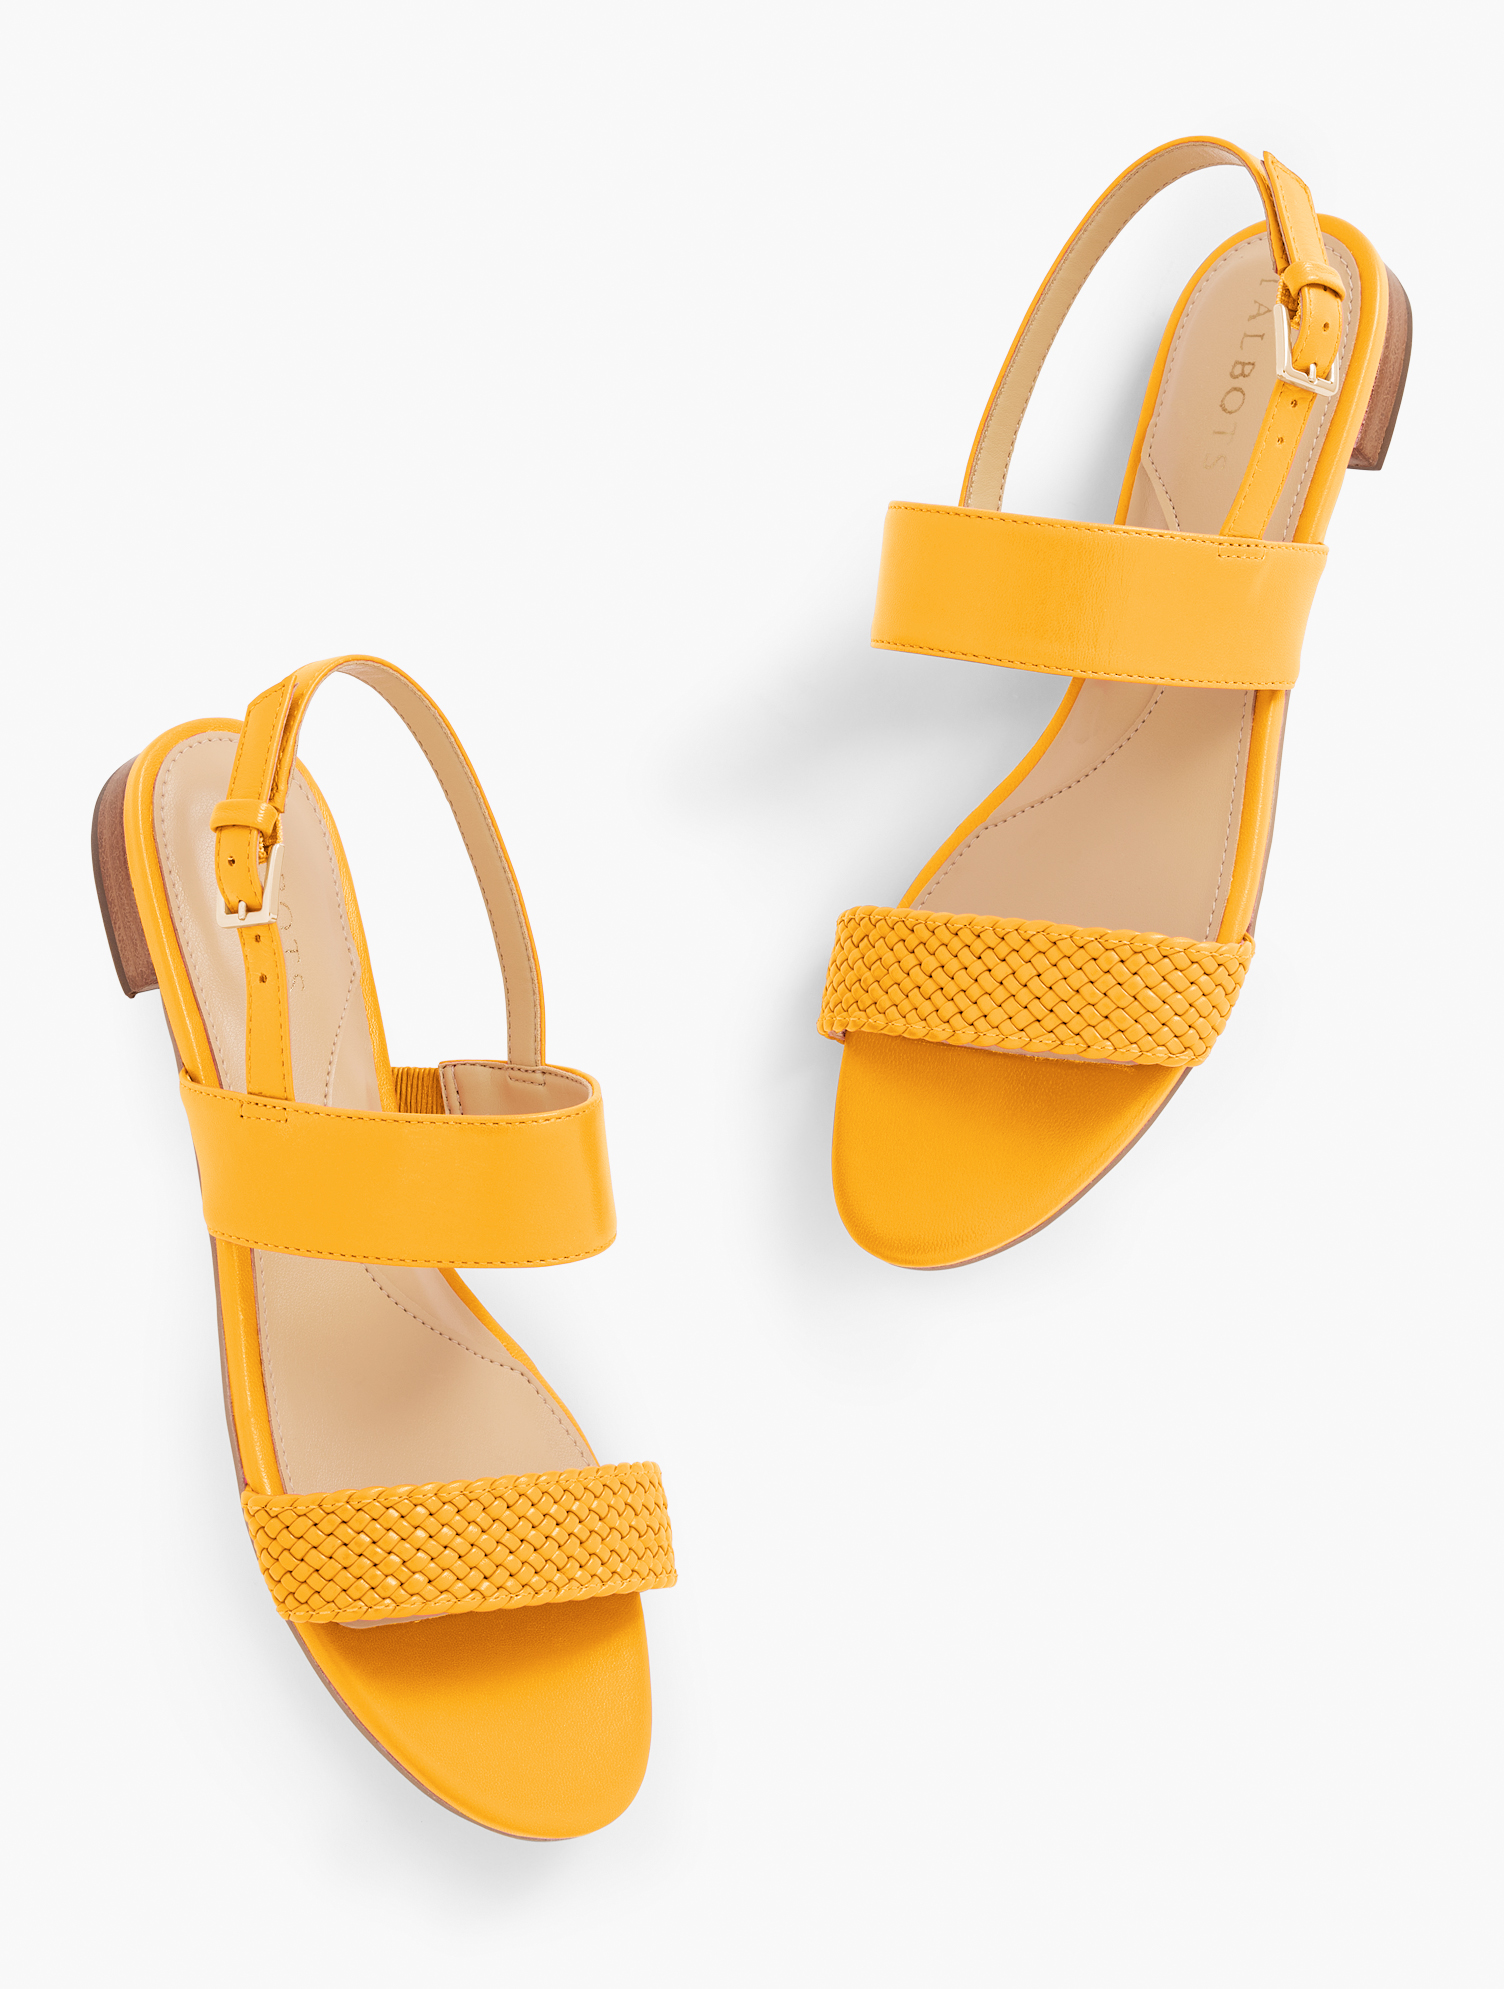 Talbots Keri Braid Sandals - Bright Marigold - 11m